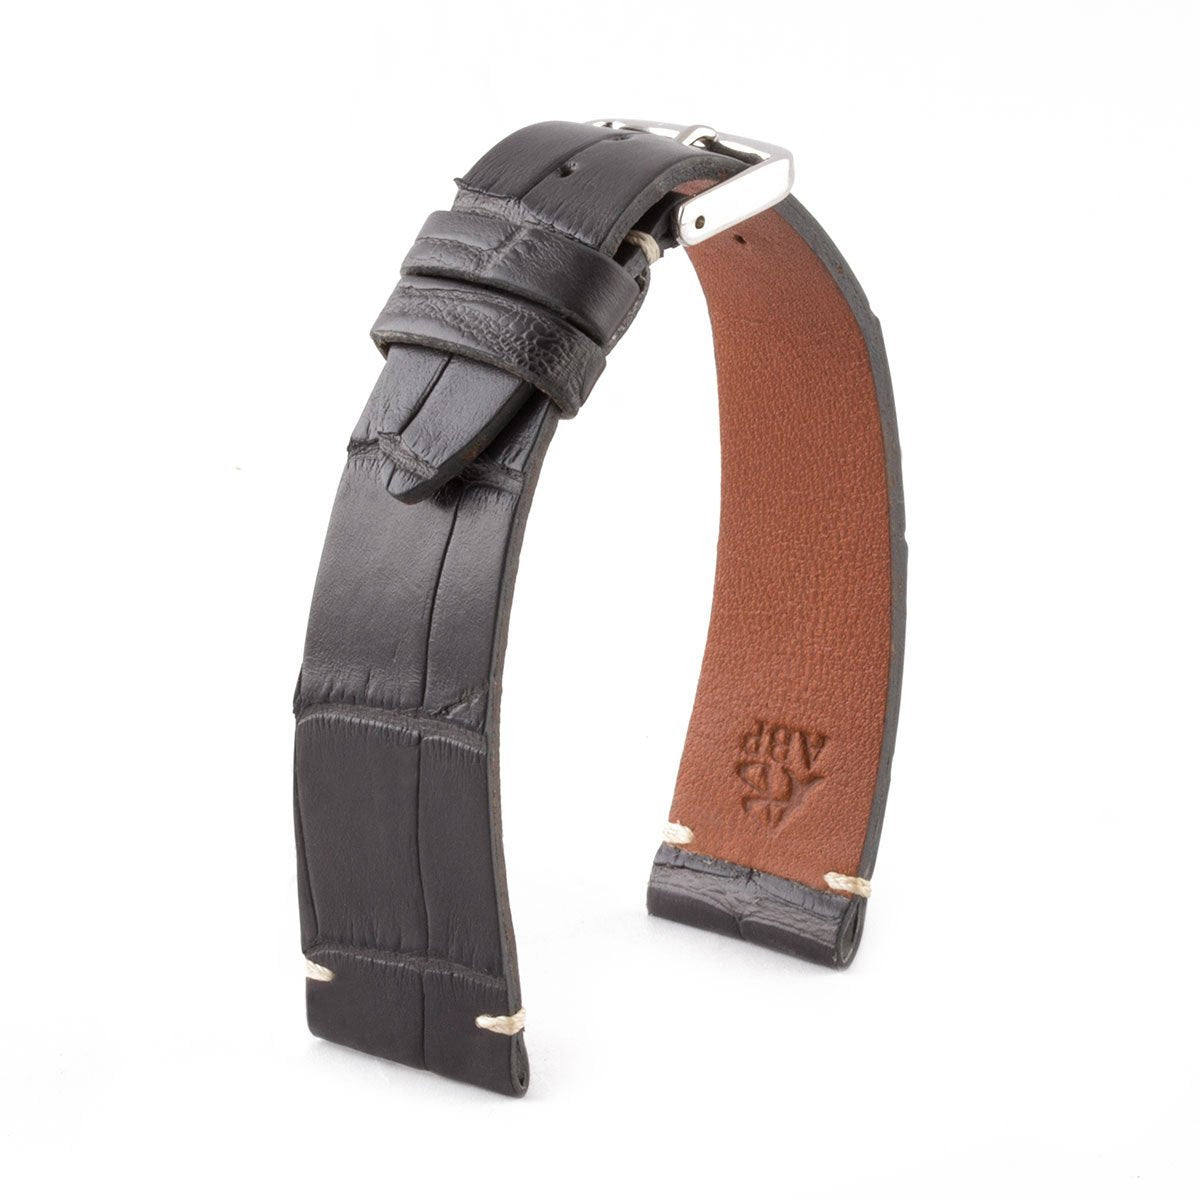 Bracelet "Retro" - Bracelet montre cuir - Alligator (noir, marron, gris, bleu, blanc, rouge, beige, rose) - watch band leather strap - ABP Concept -